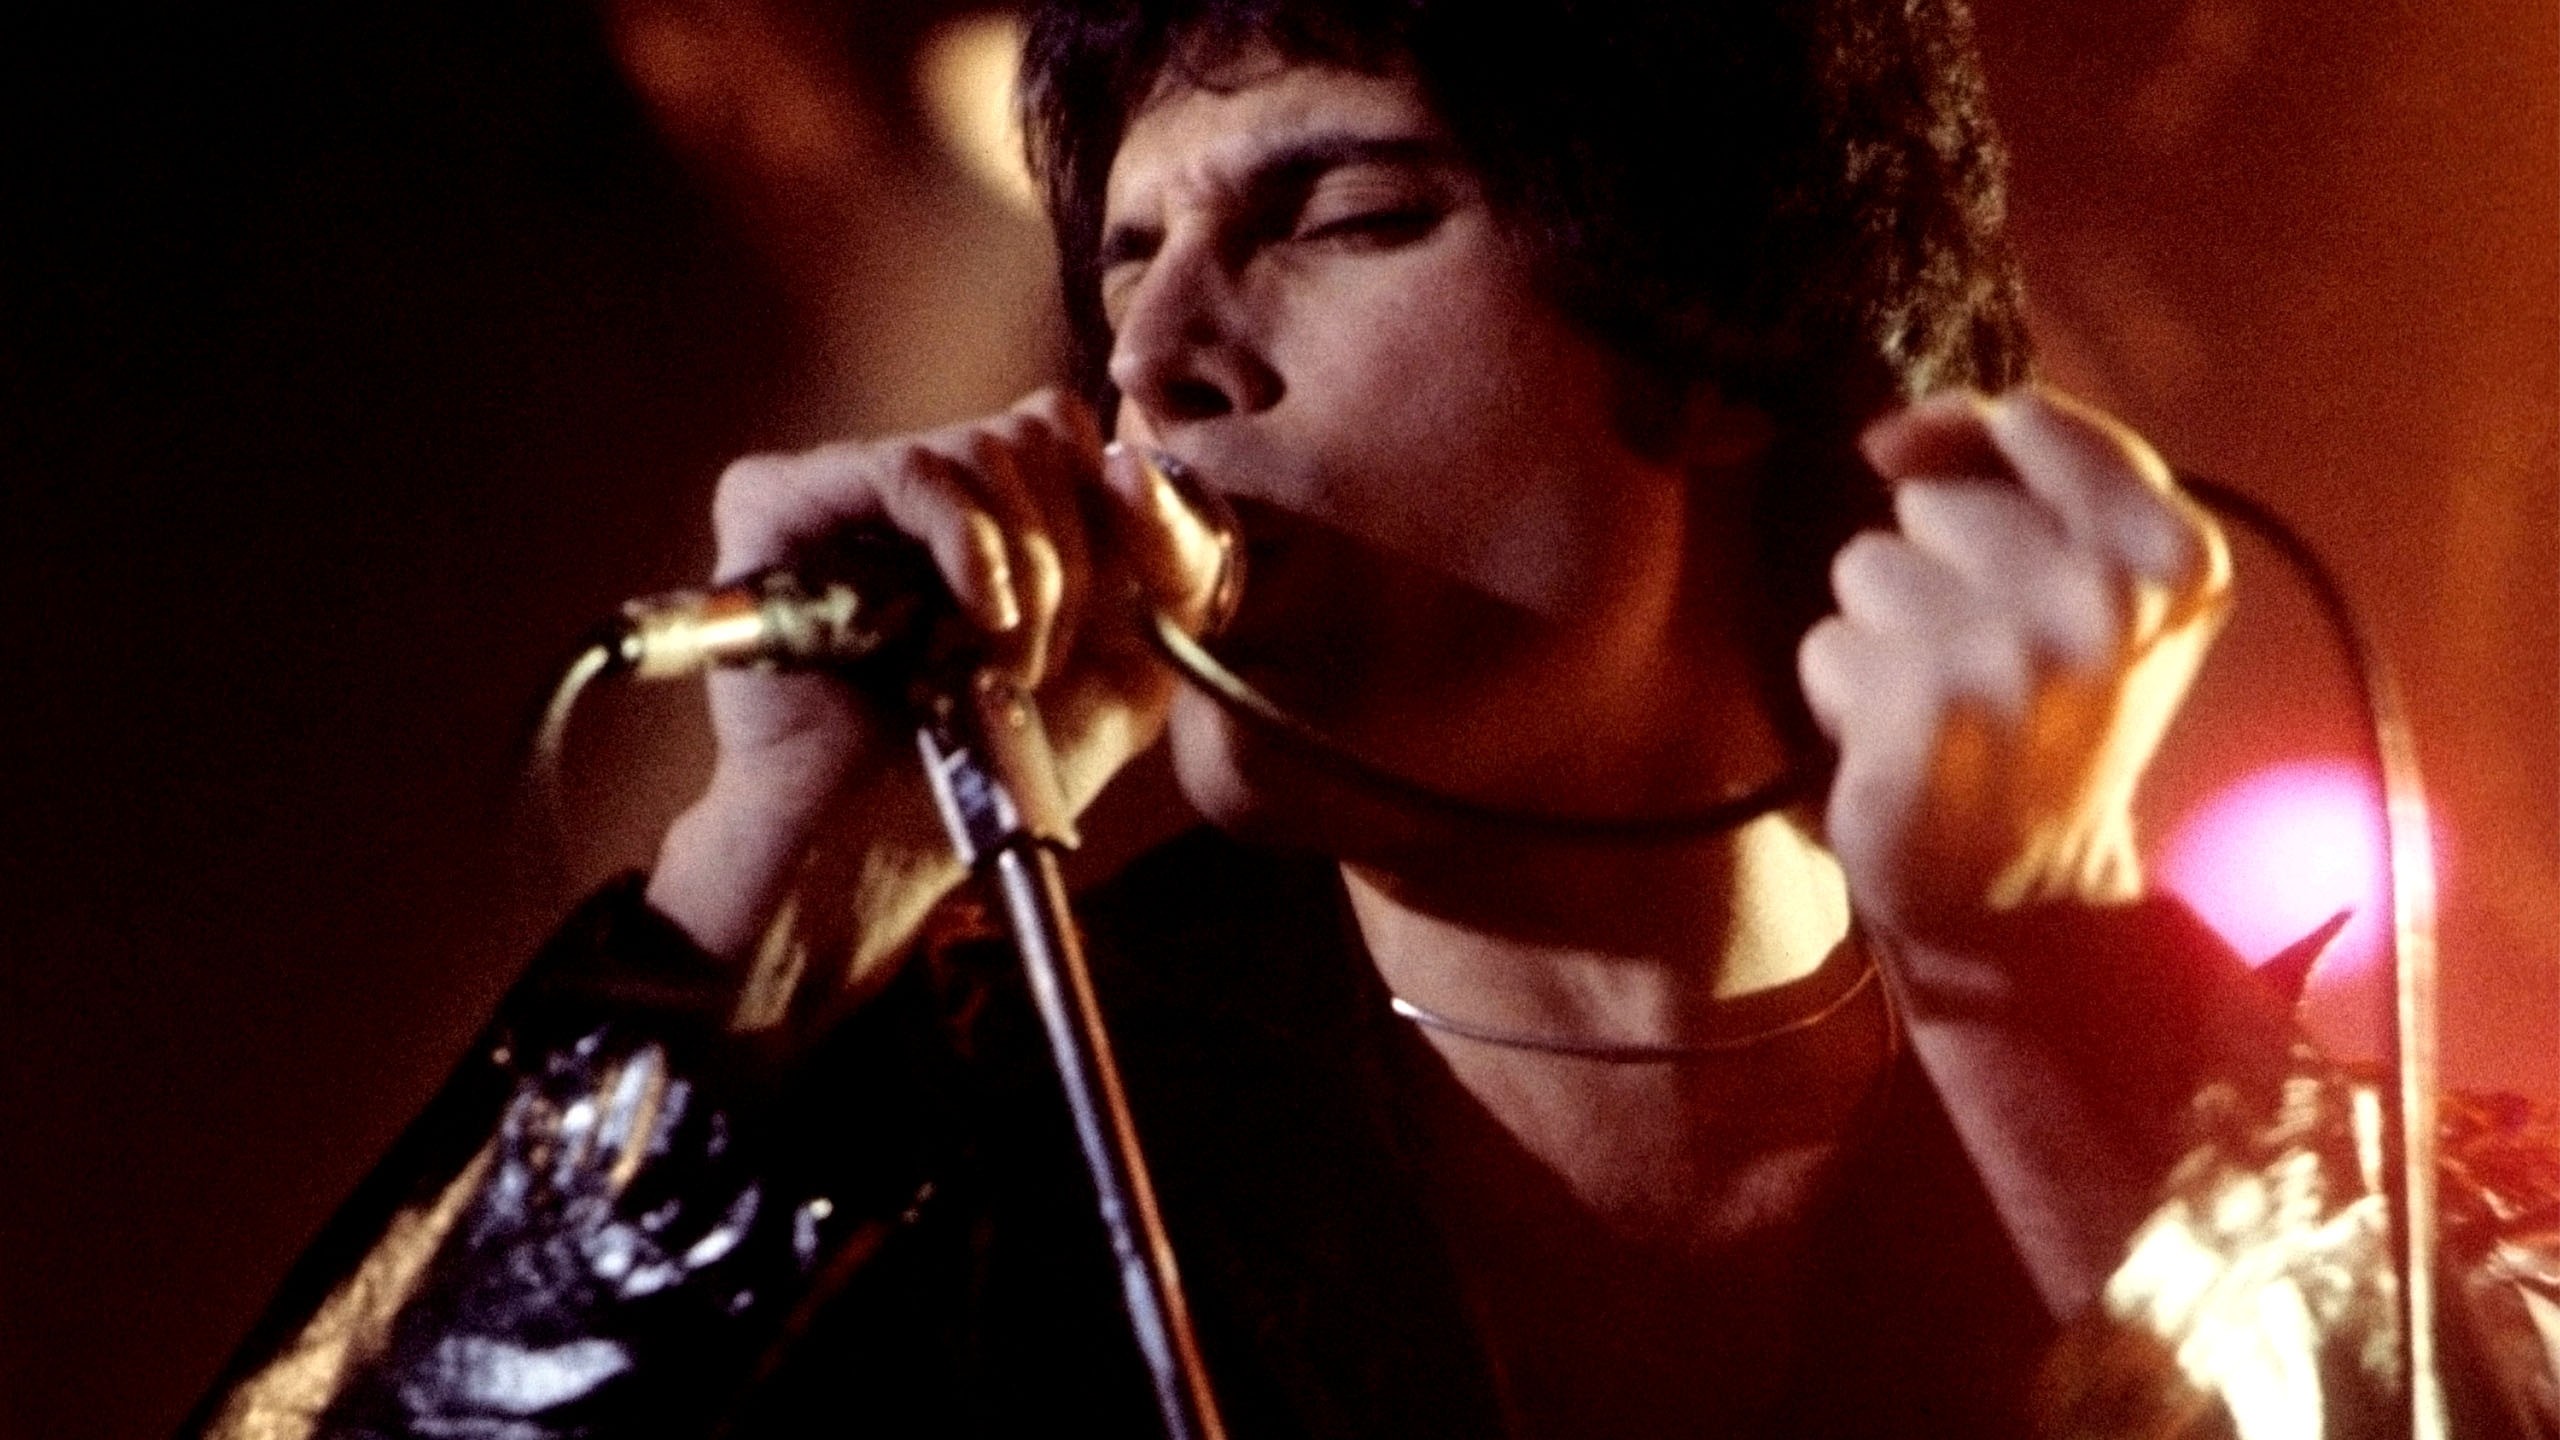 Freddie Mercury, lead singer of Queen